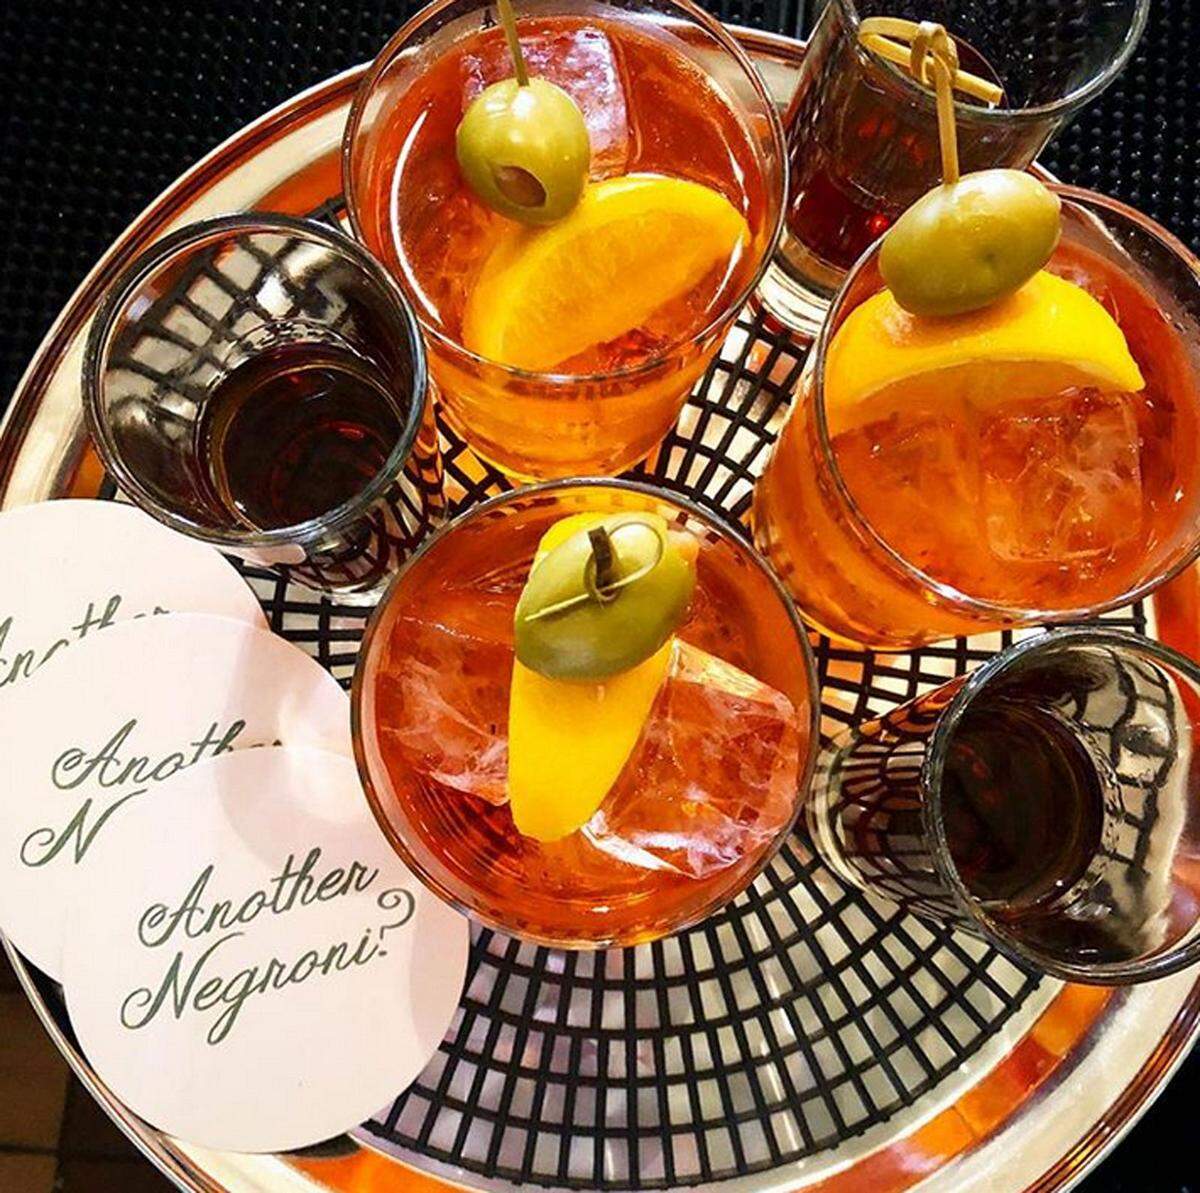 Schon Ernest Hemingway und Patti Smith haben in der Bar getrunken, die seit über hundert Jahren italienisch inspirierte Cocktails auftischt. 12 Negronis stehen auf der Karte, aber auch den Garibaldi mit Campari und Orangensaft sollte man kosten.